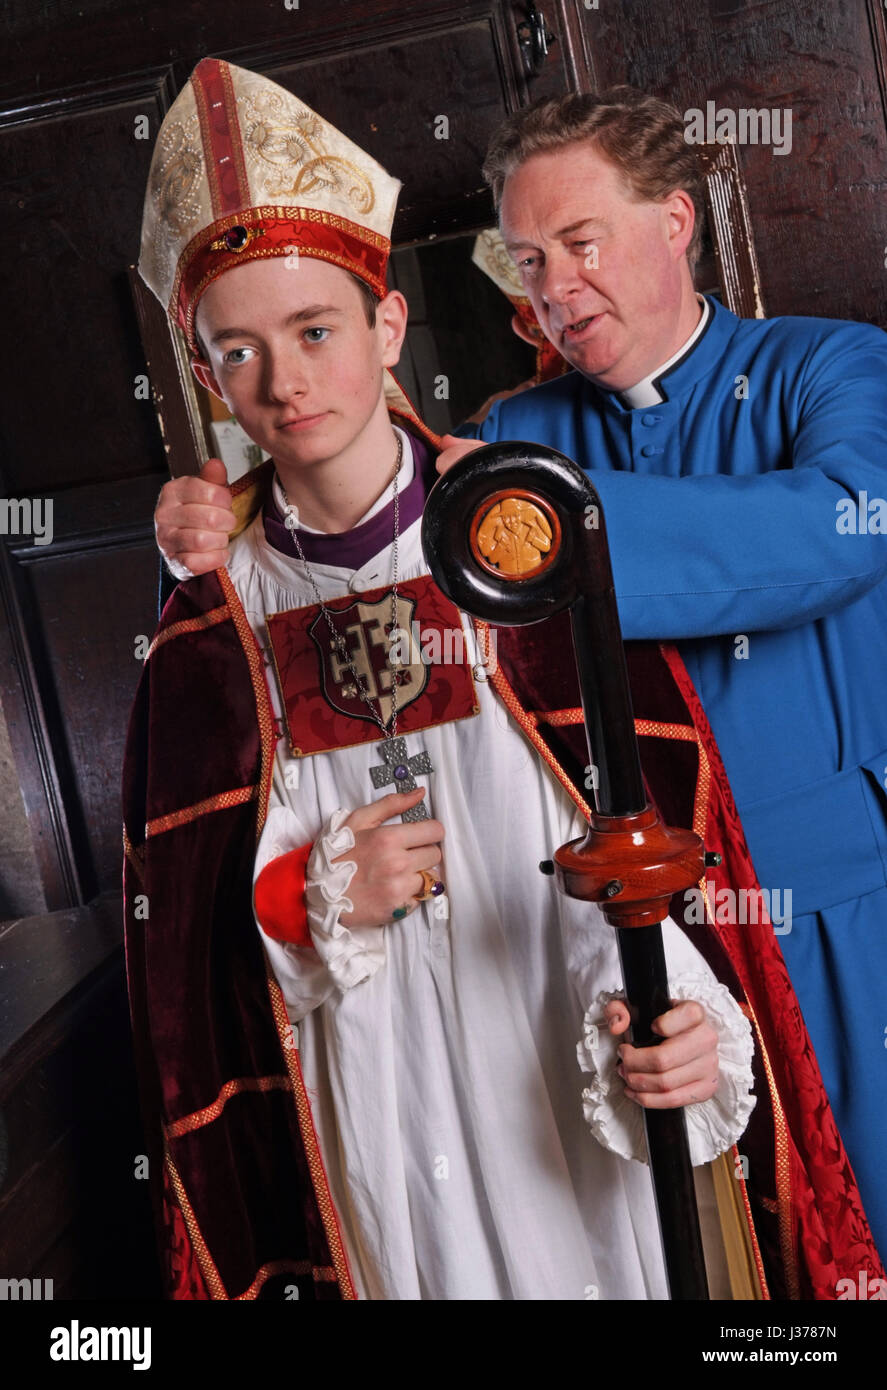 El joven obispo de Hereford Cathedral patrick dunachie con canon chanceller christopher pullin (bata azul) Foto de stock